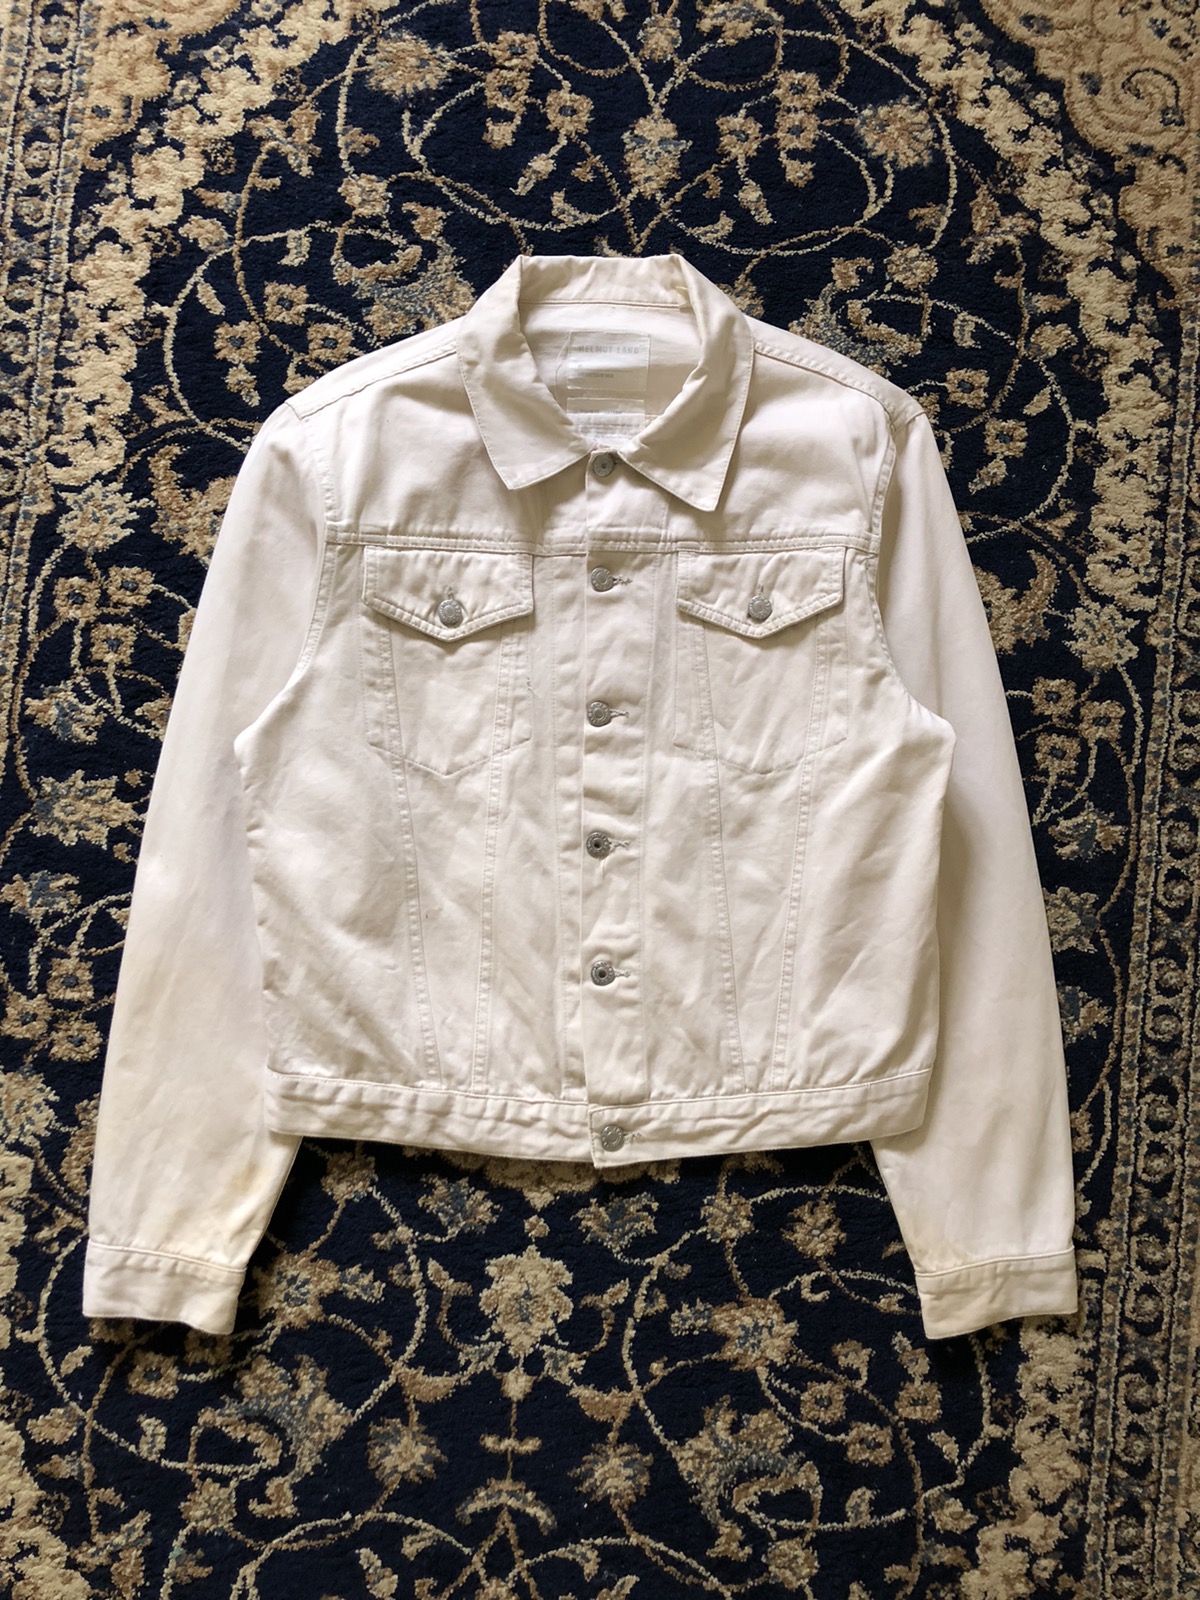 1998 Helmut Lang Off-white Vintage Cotton Jacket - 1